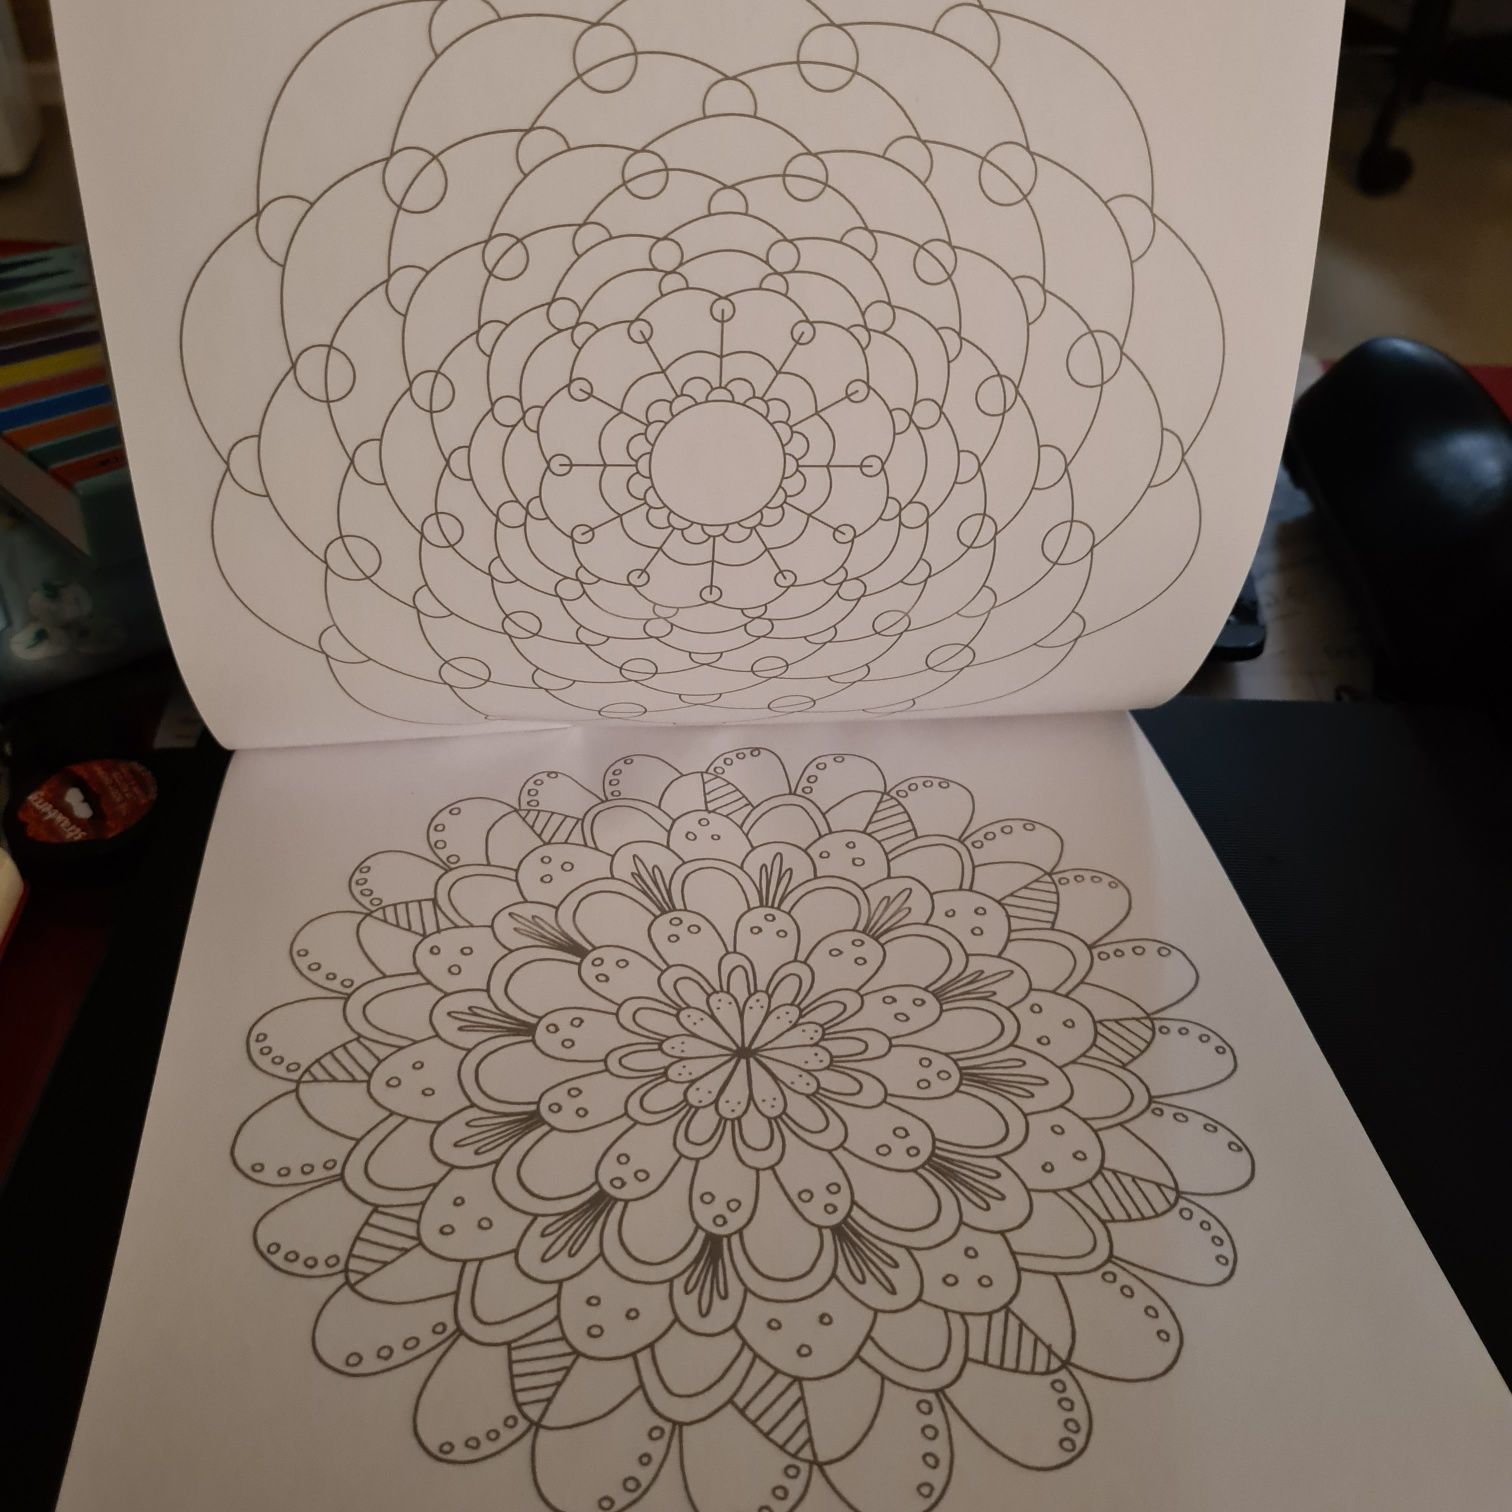 Livro para colorir Mandala